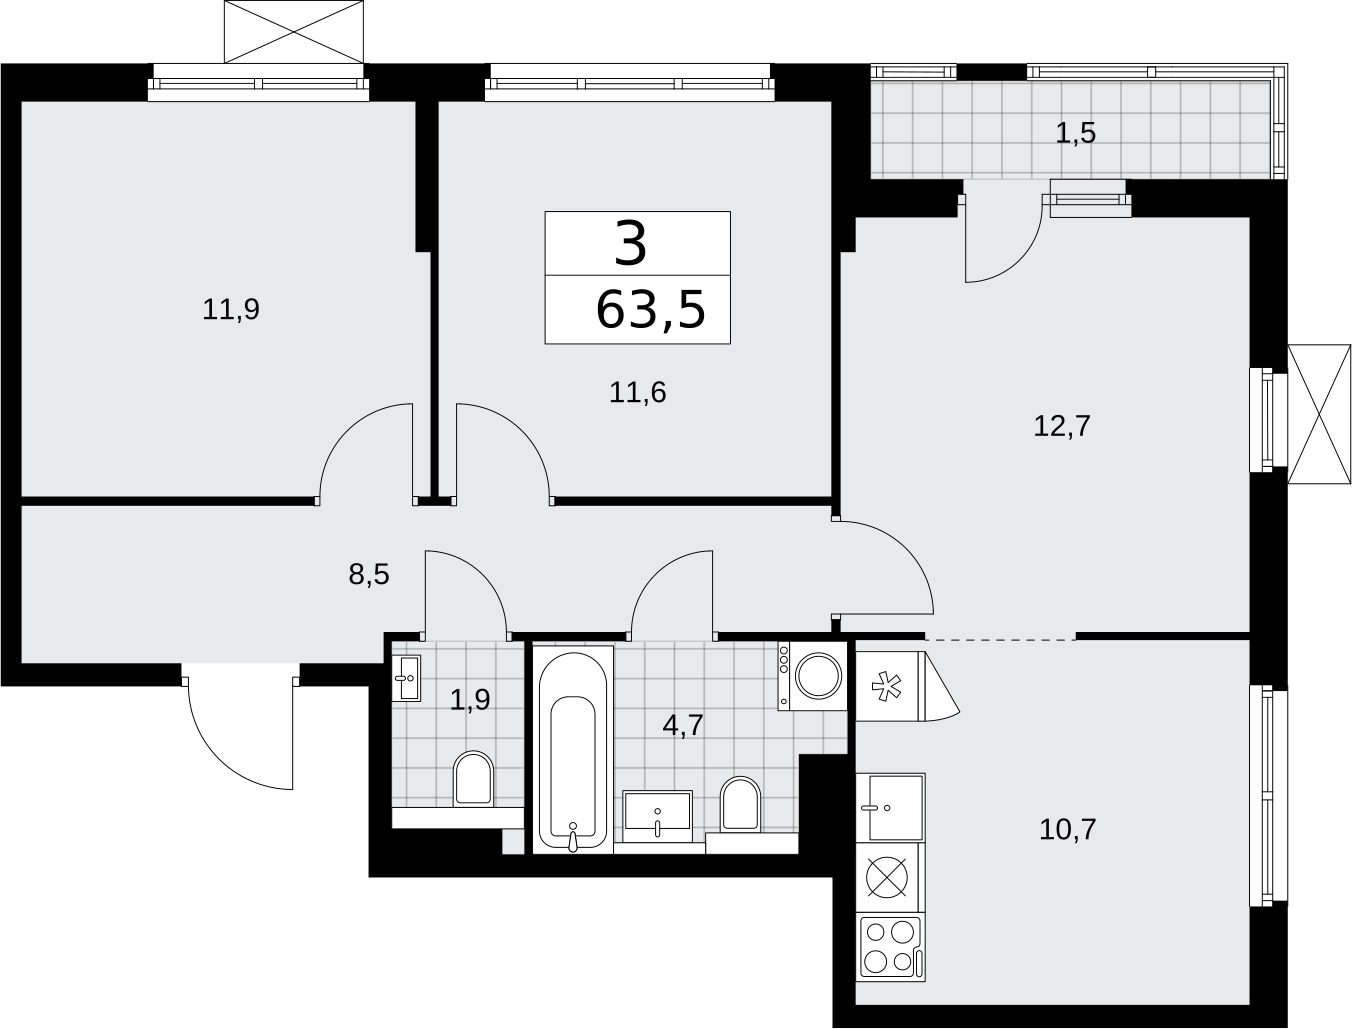 Продается просторная 3-комнатная квартира с отделкой в новом ЖК, метро рядом